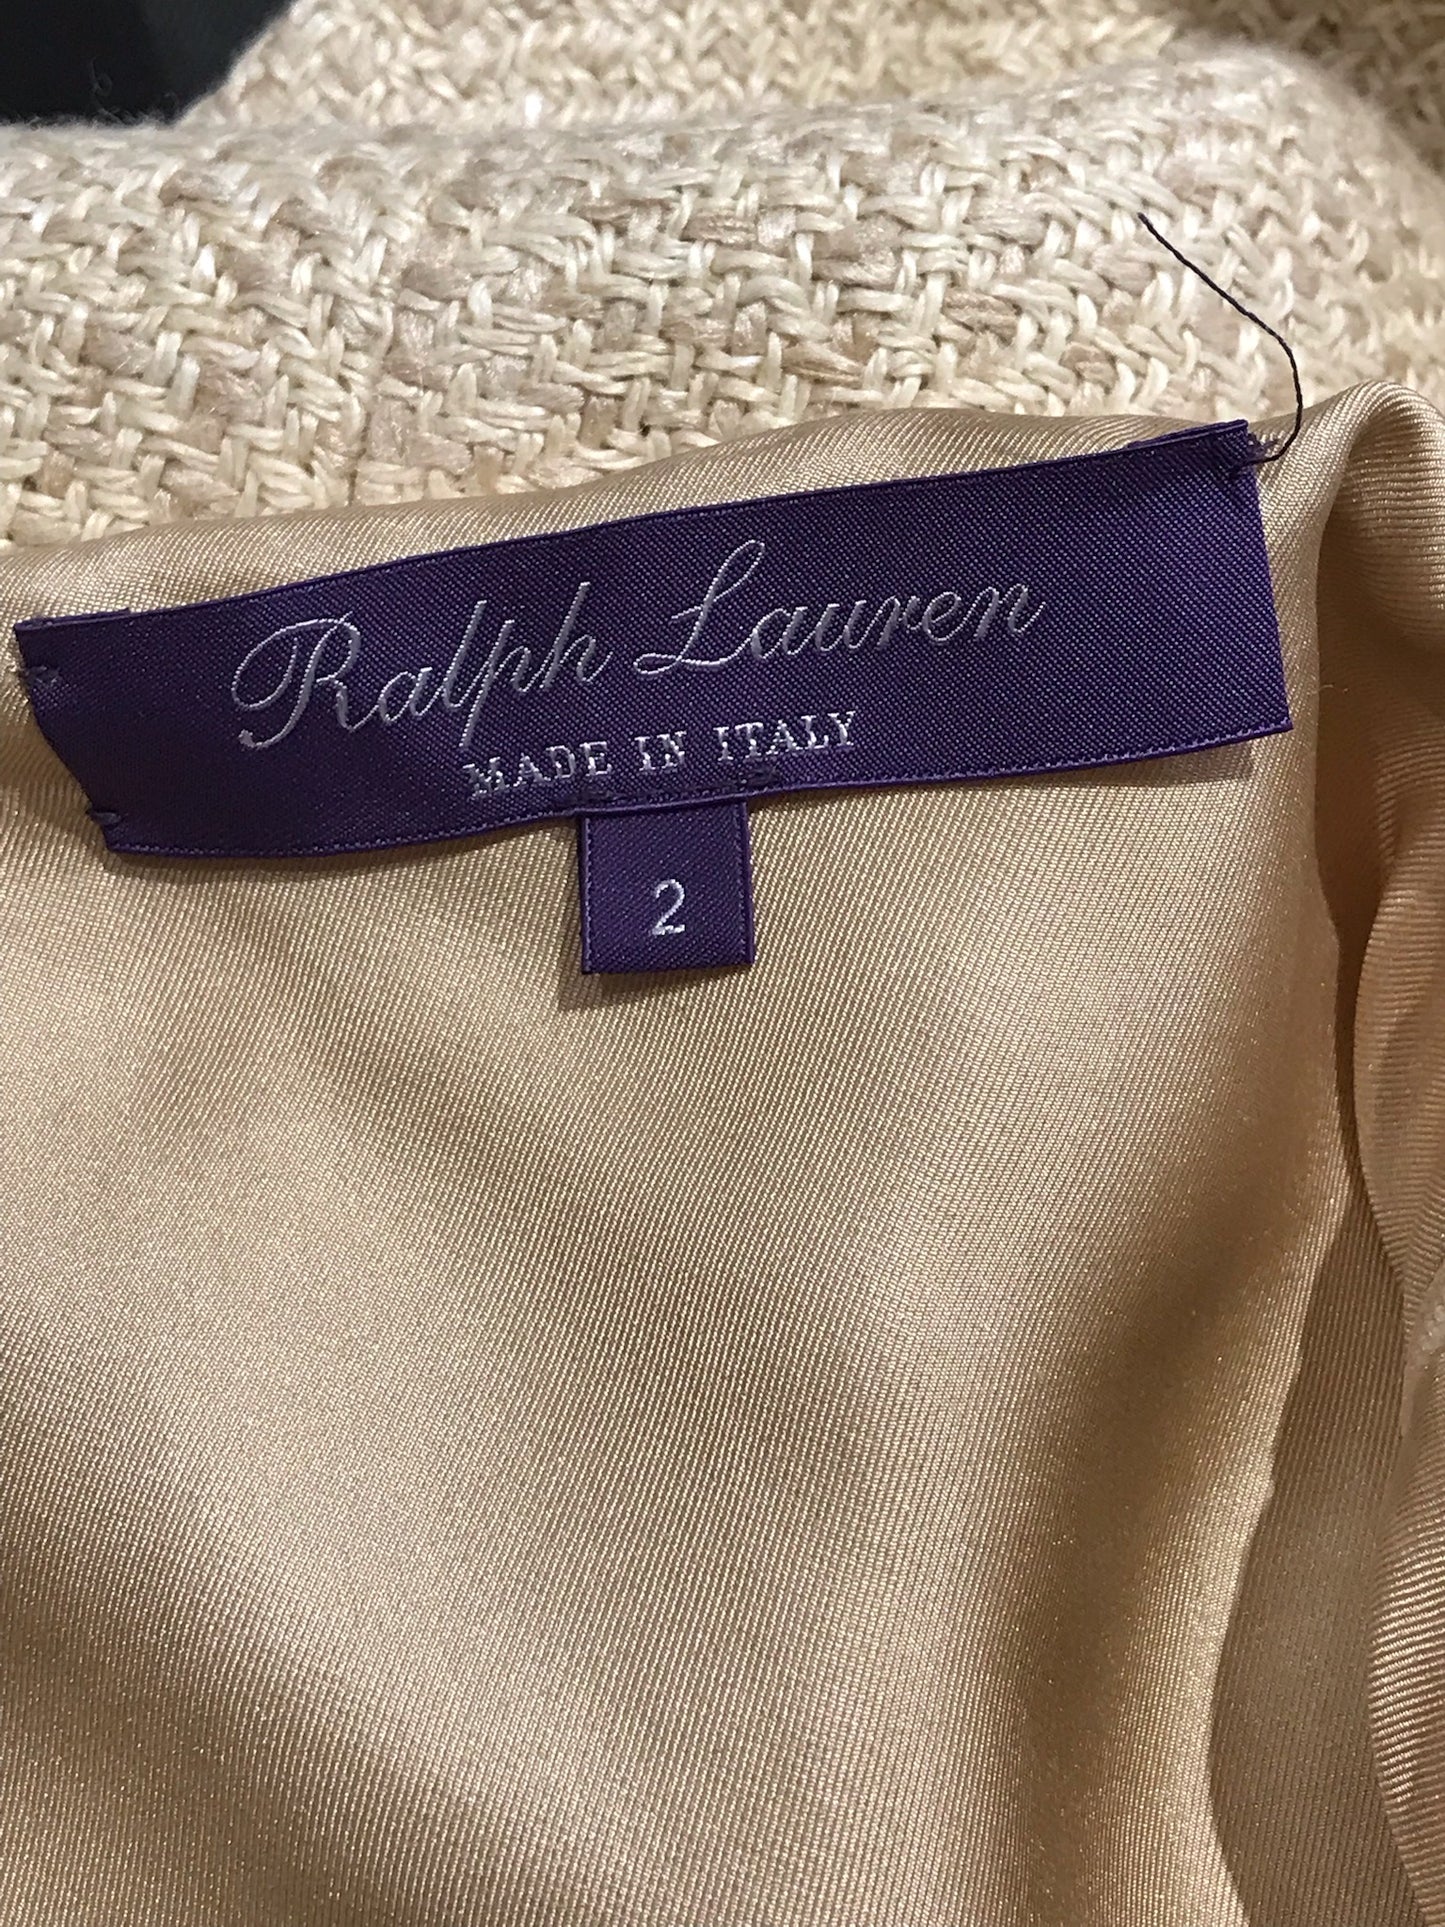 Jupe Ralph Lauren tweed T.34